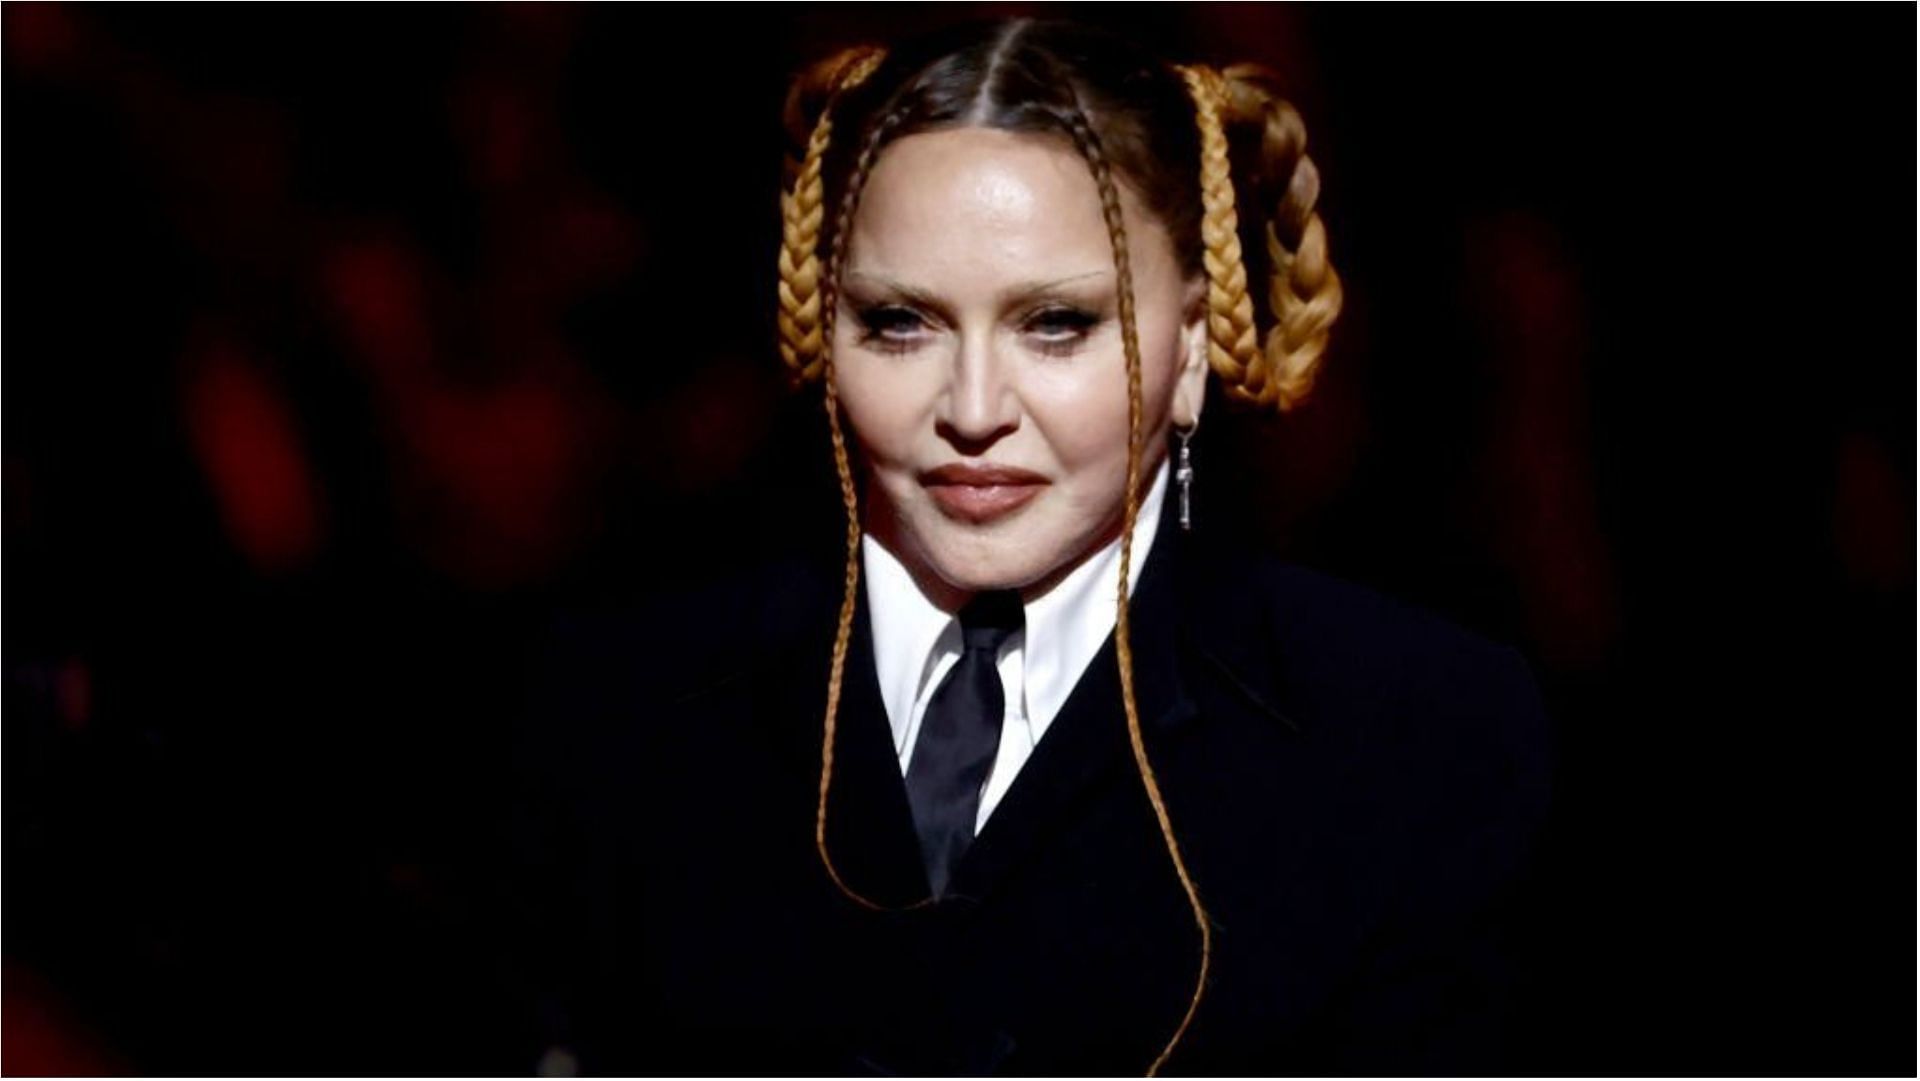 Madonna grew up alongside her seven siblings (Image via Frazer Harrison/Getty Images)